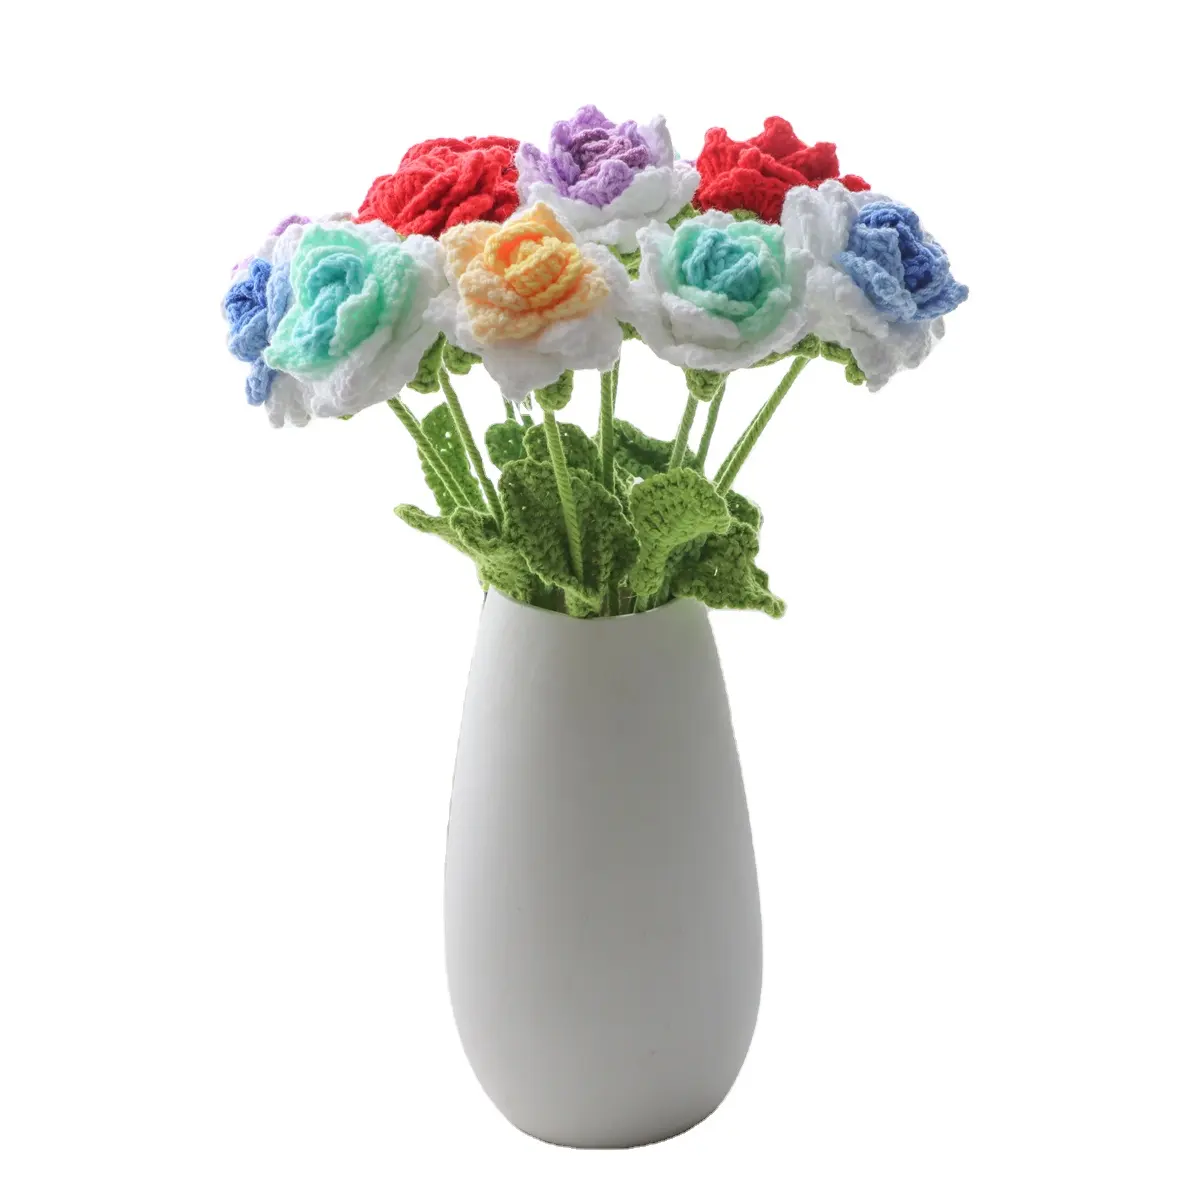 Yeni tasarlanmış el-dokunan sivri köşe gül tığ çiçek yapay bitki sevgililer günü hediyeleri için